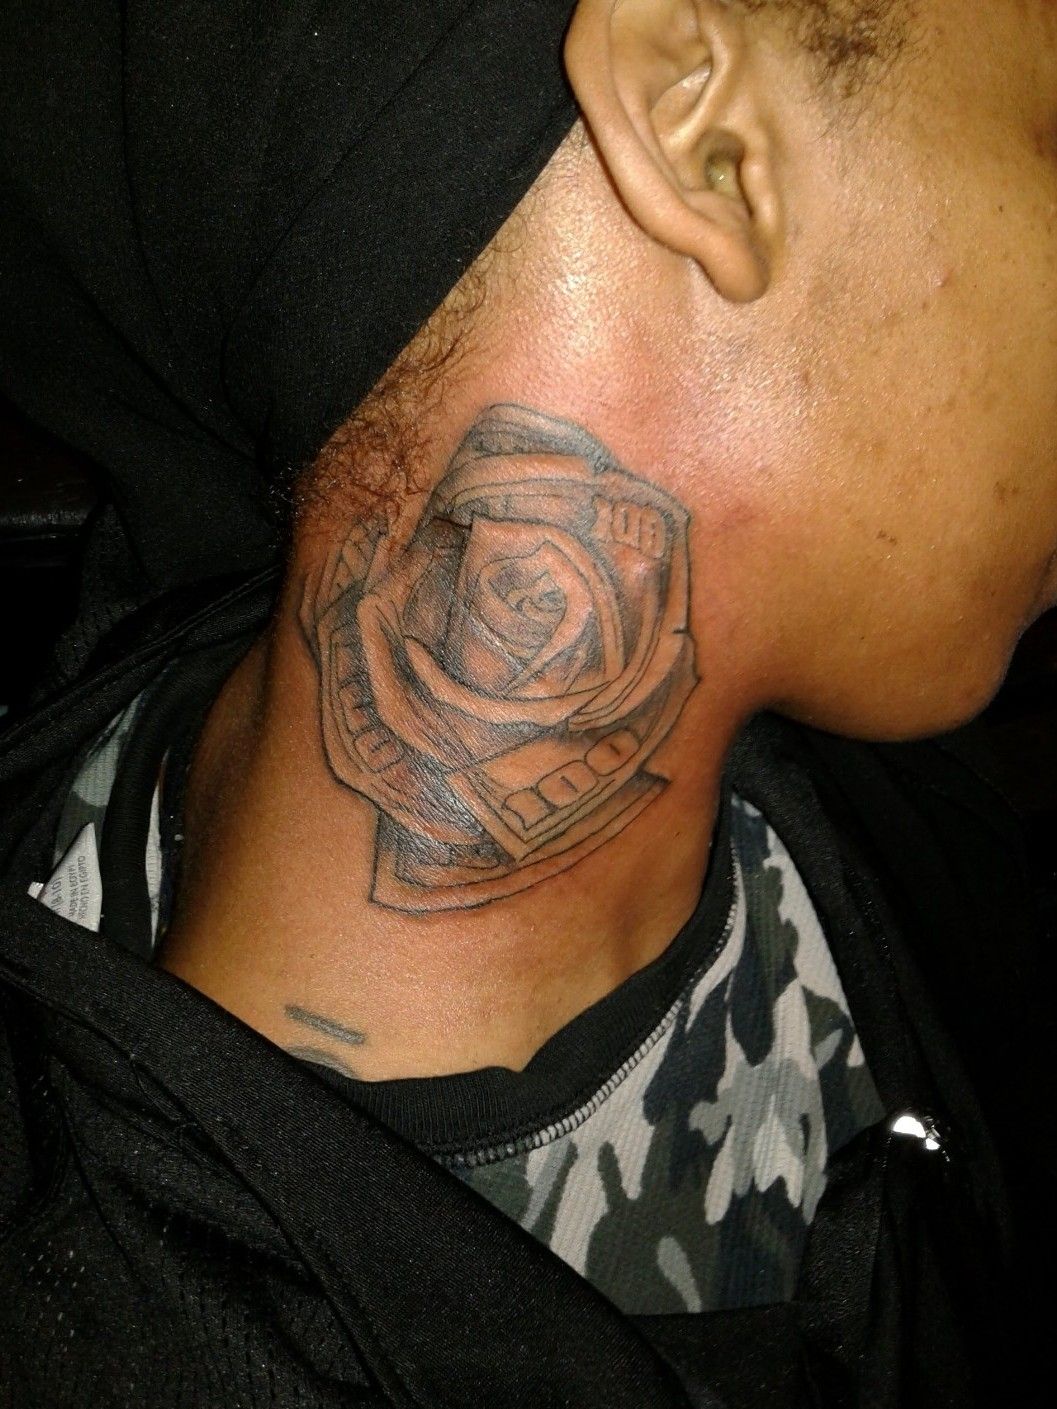 Nice tattoo  Full neck tattoos Money tattoo Neck tattoo